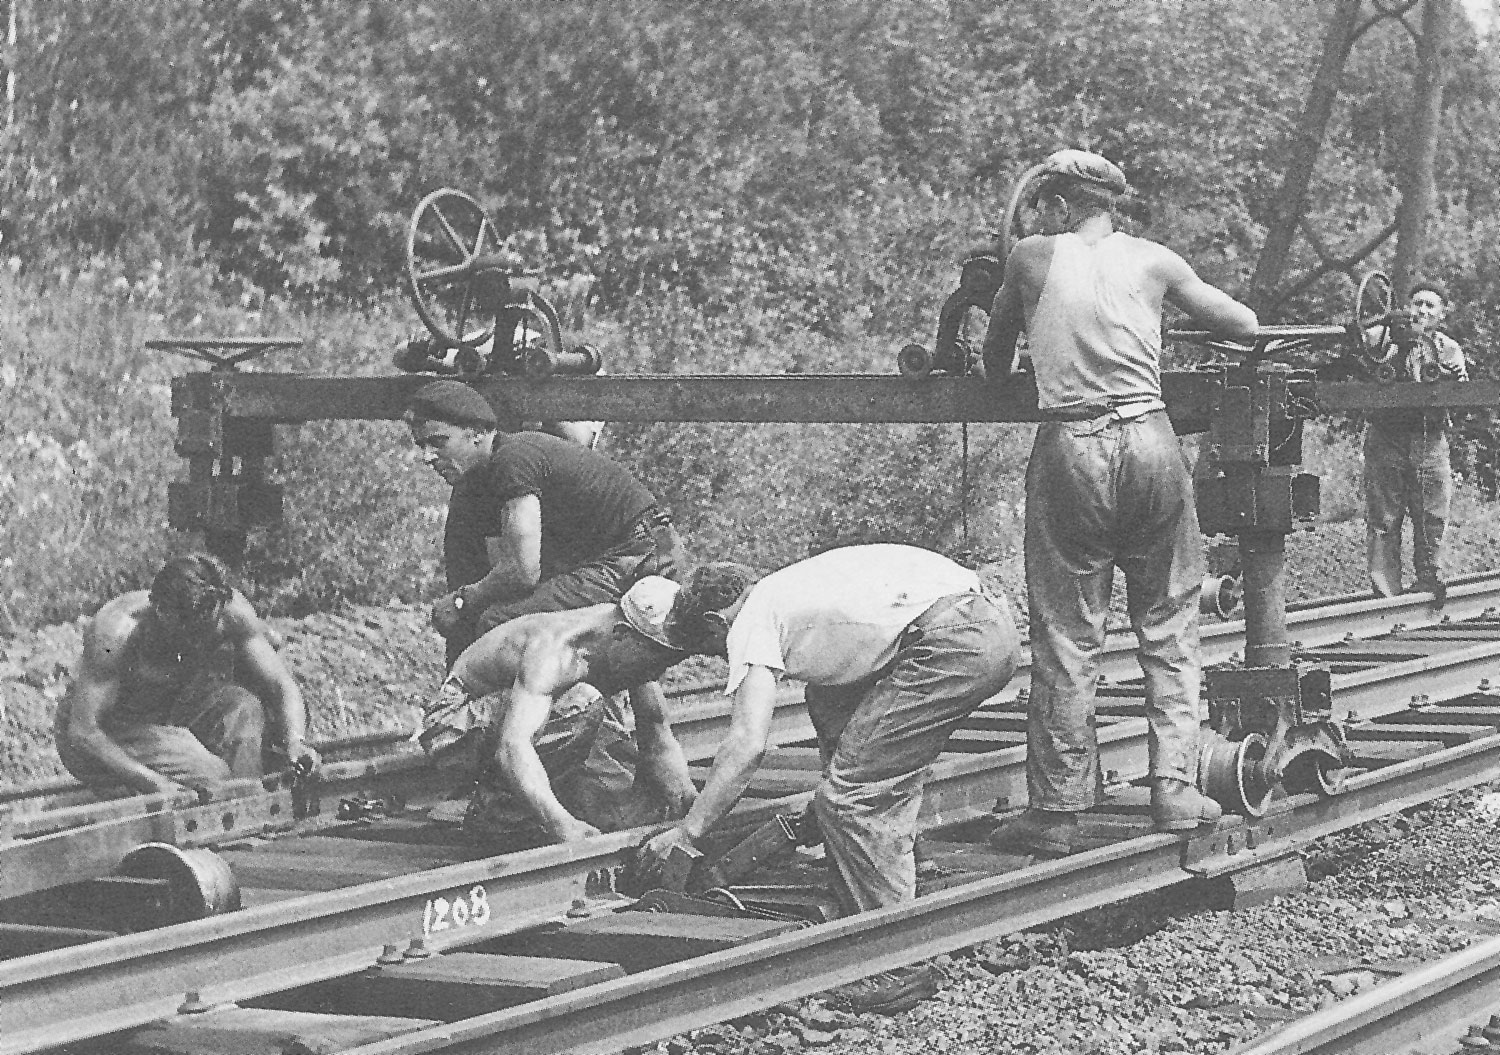 Preiser #79147 Workers Railroad Workers 